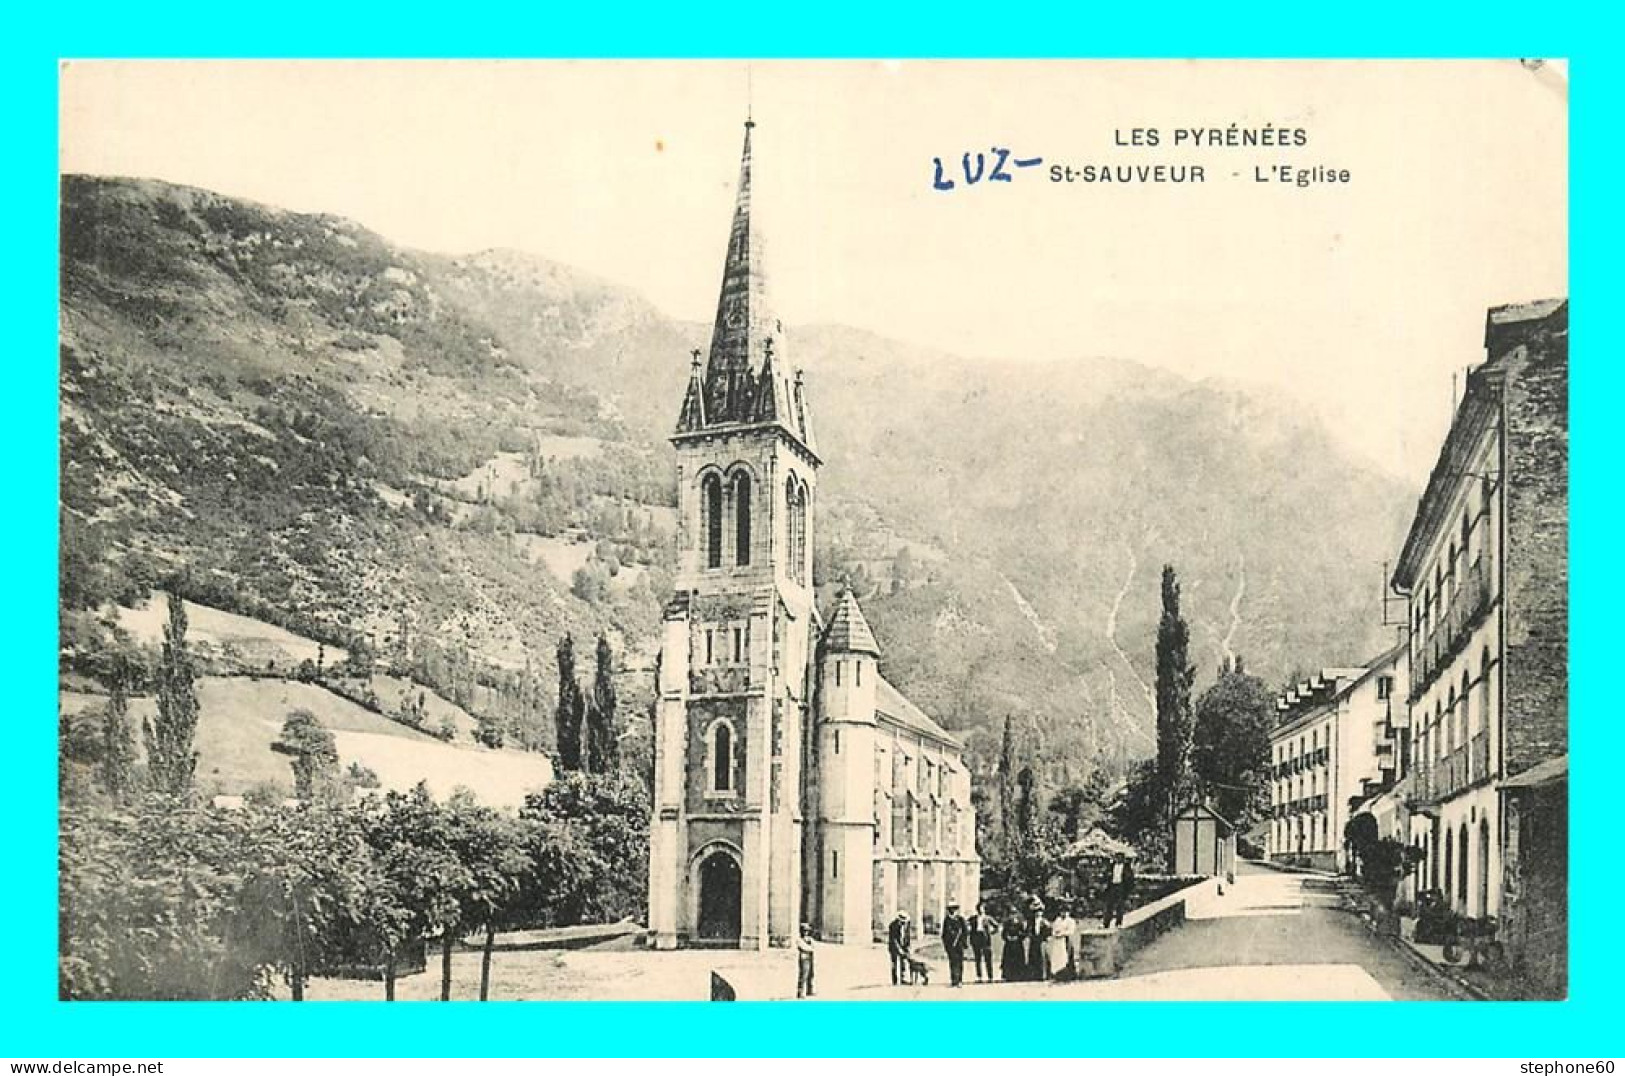 A884 / 609 65 - LUZ SAINT SAUVEUR Eglise - Luz Saint Sauveur